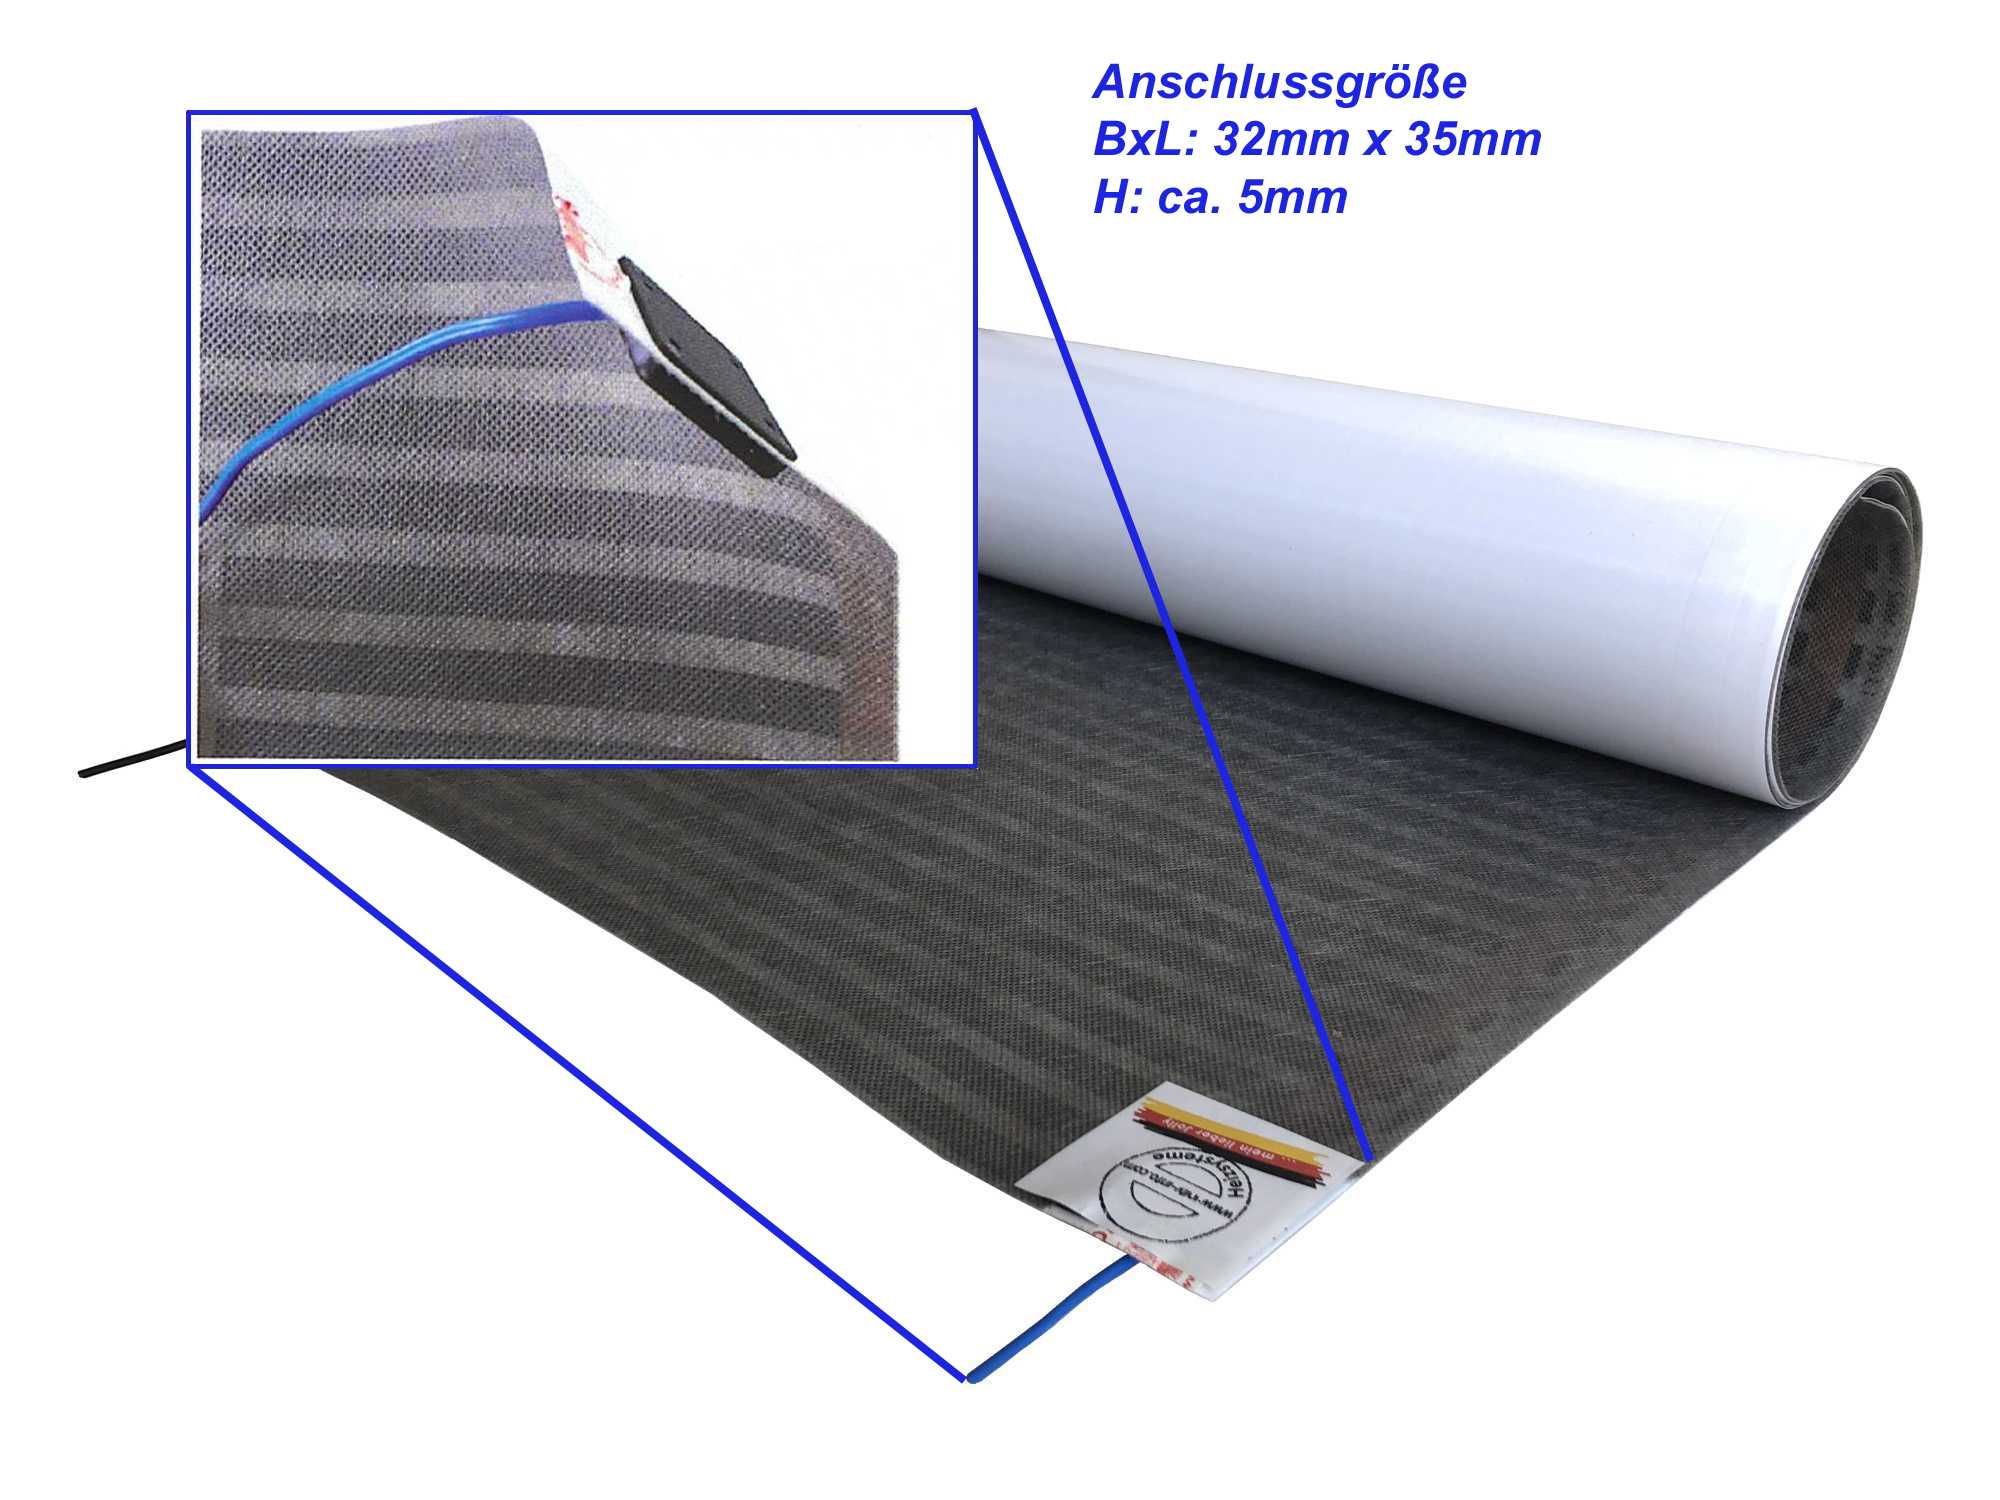 Elektrische Fußbodenheizung, superflache Heizfolie speziell für Parkett + Laminat, inkl. Anschlüsse, Temperaturregler optional